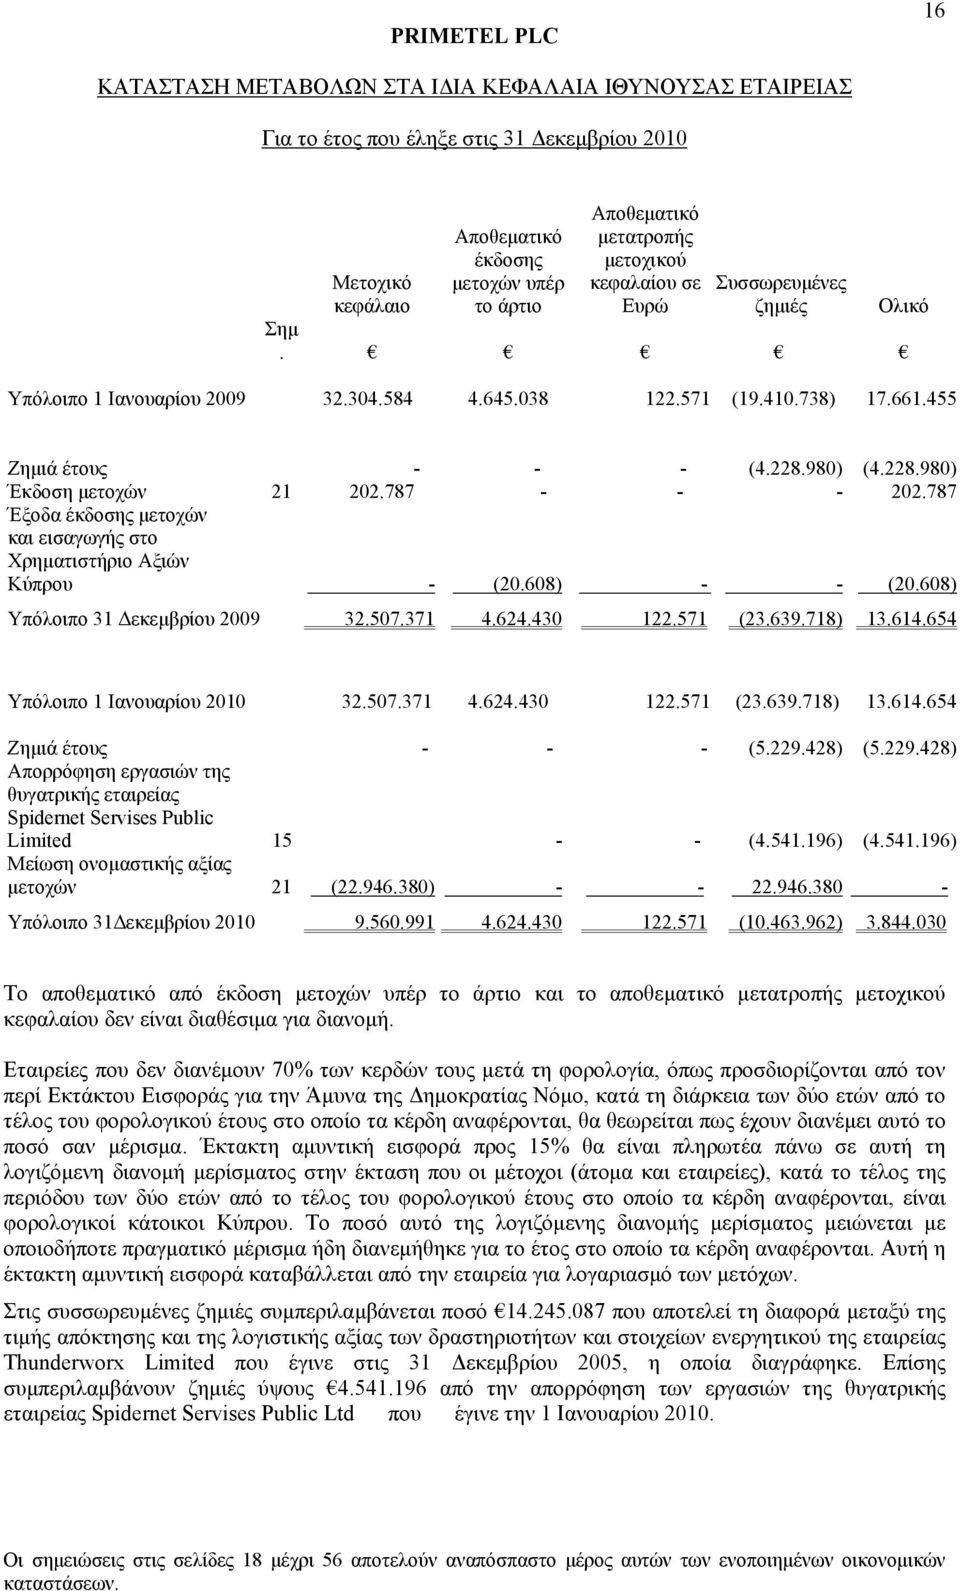 787 Έξοδα έκδοσης μετοχών και εισαγωγής στο Χρηματιστήριο Αξιών Κύπρου - (20.608) - - (20.608) Υπόλοιπο 31 Δεκεμβρίου 2009 32.507.371 4.624.430 122.571 (23.639.718) 13.614.